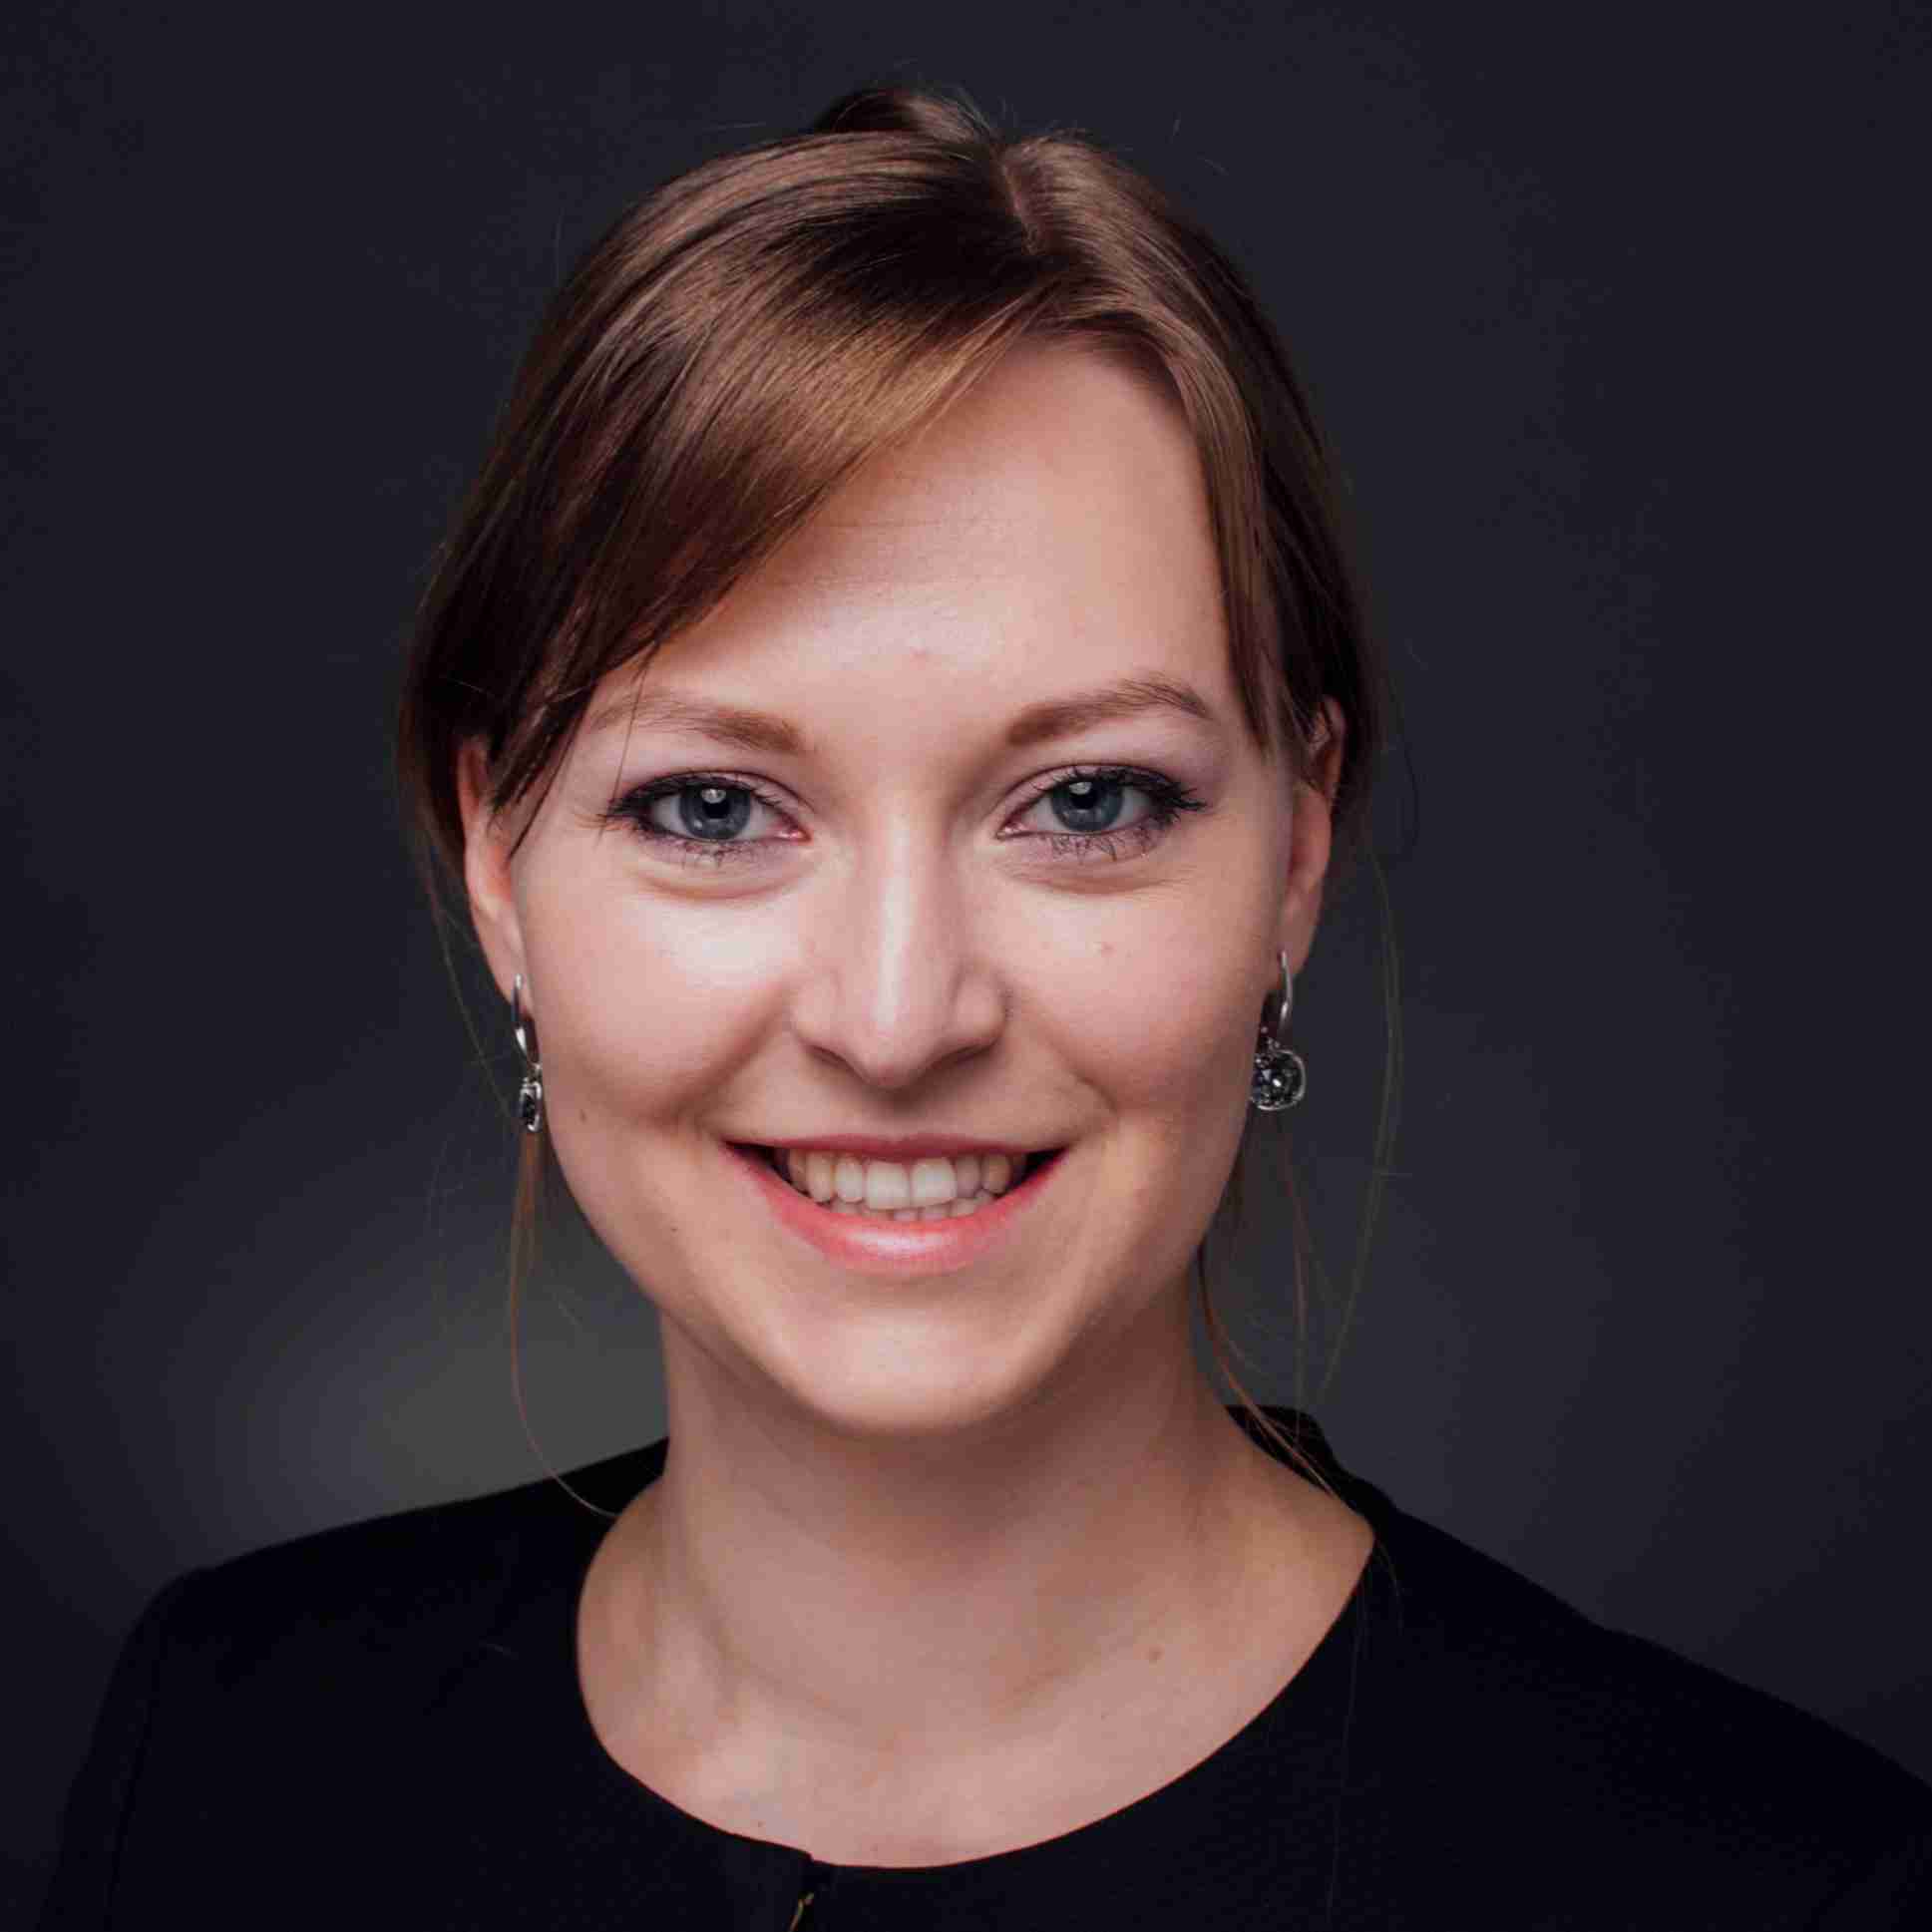 Profile image of Dr Valerie Laturnus